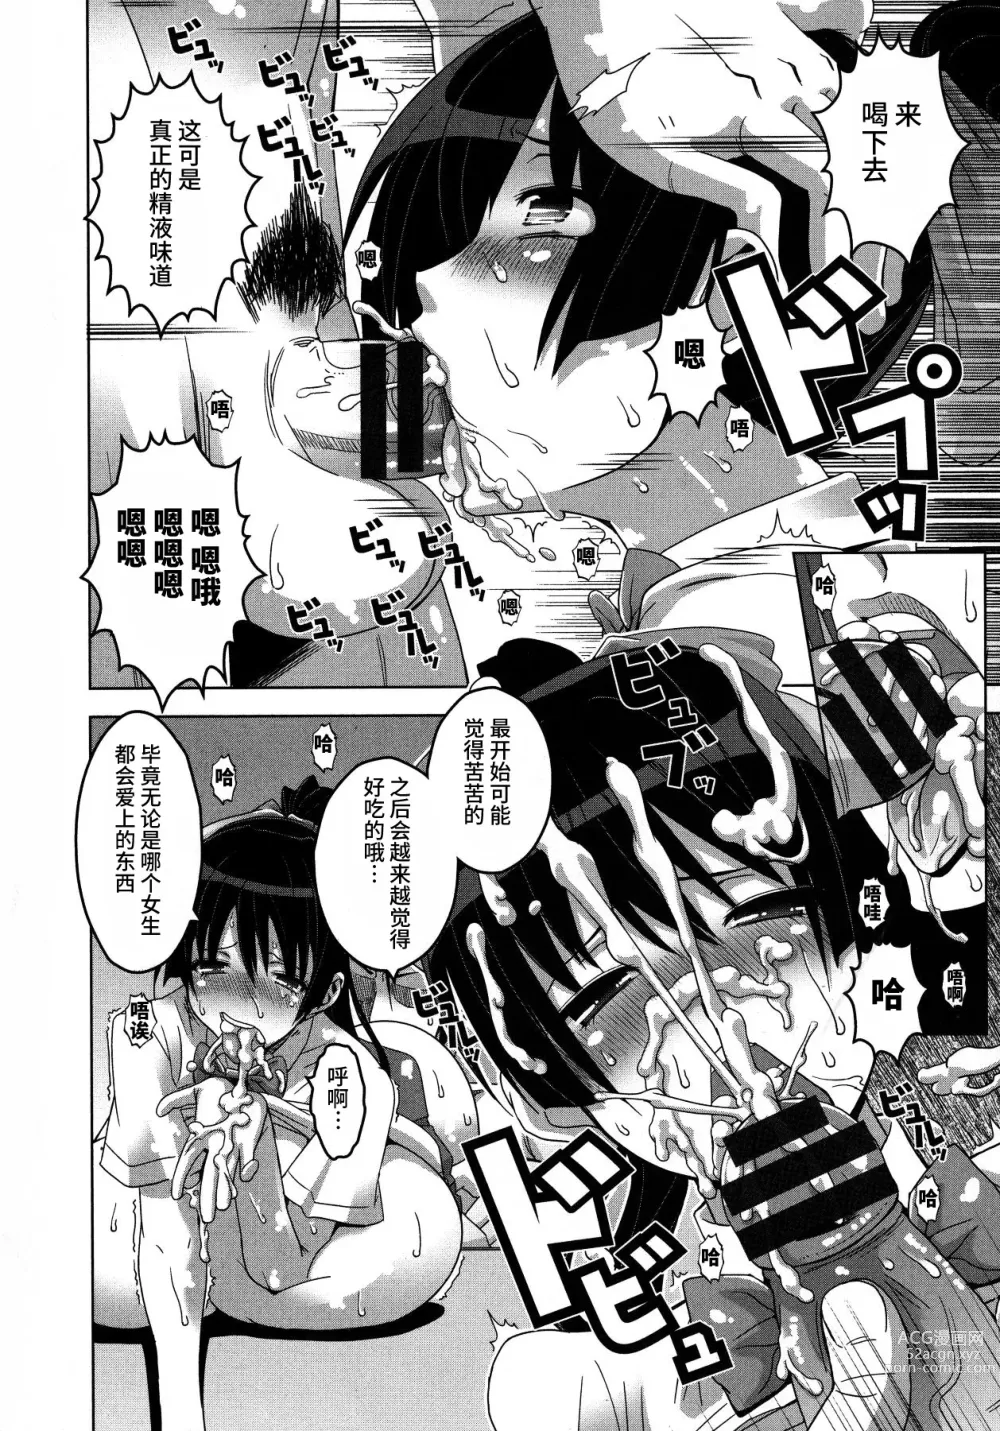 Page 157 of manga Chichiniku no Rakuin Bakunyuu ni kizamareta Etsuraku